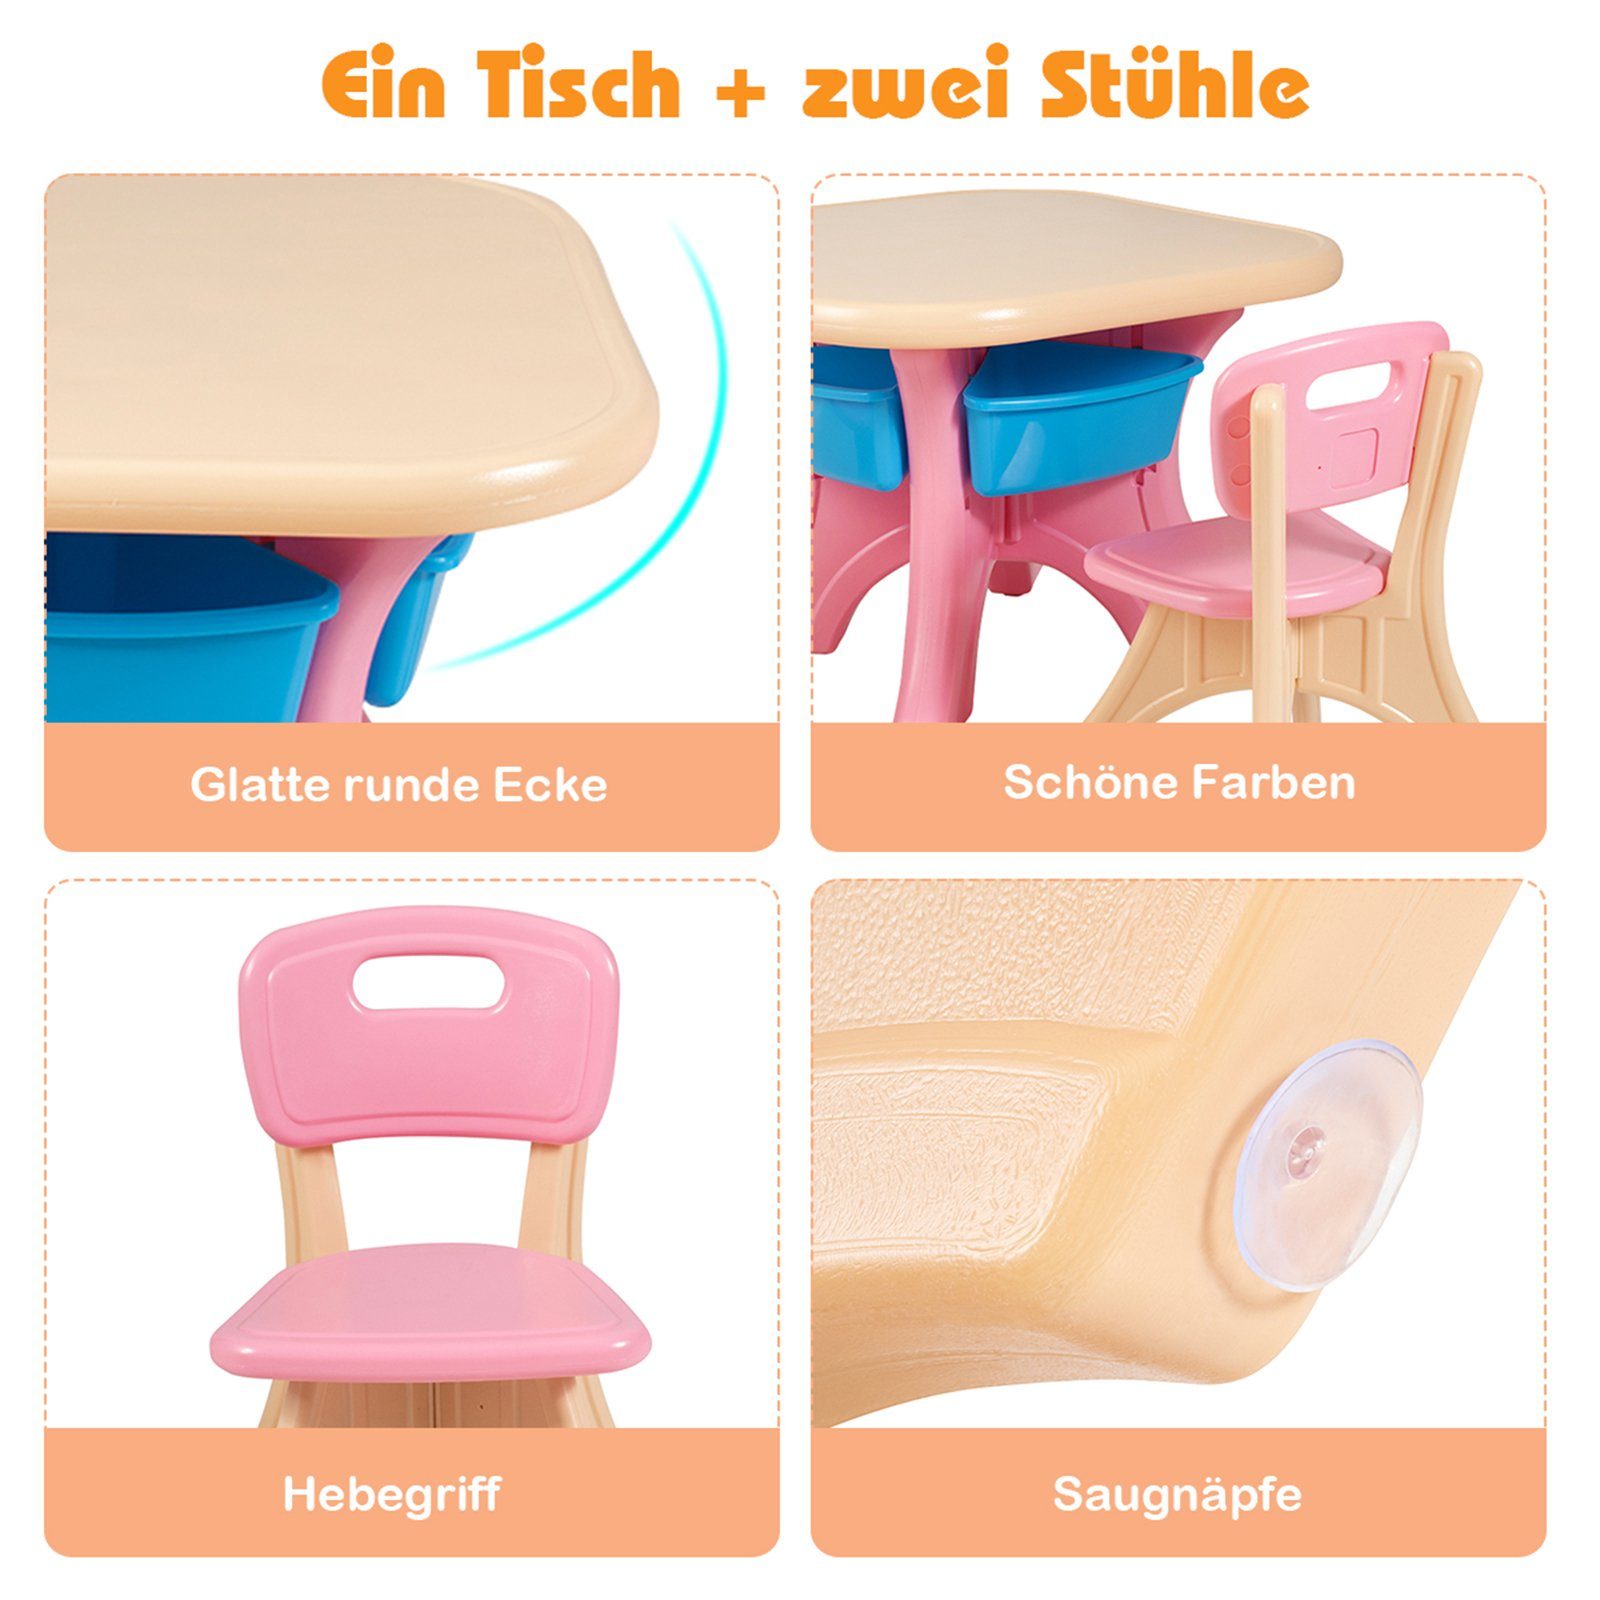 COSTWAY Kindersitzgruppe, mit 2 Stühlen&Kindertisch, Stauraum, Kunststoff Rosa mit